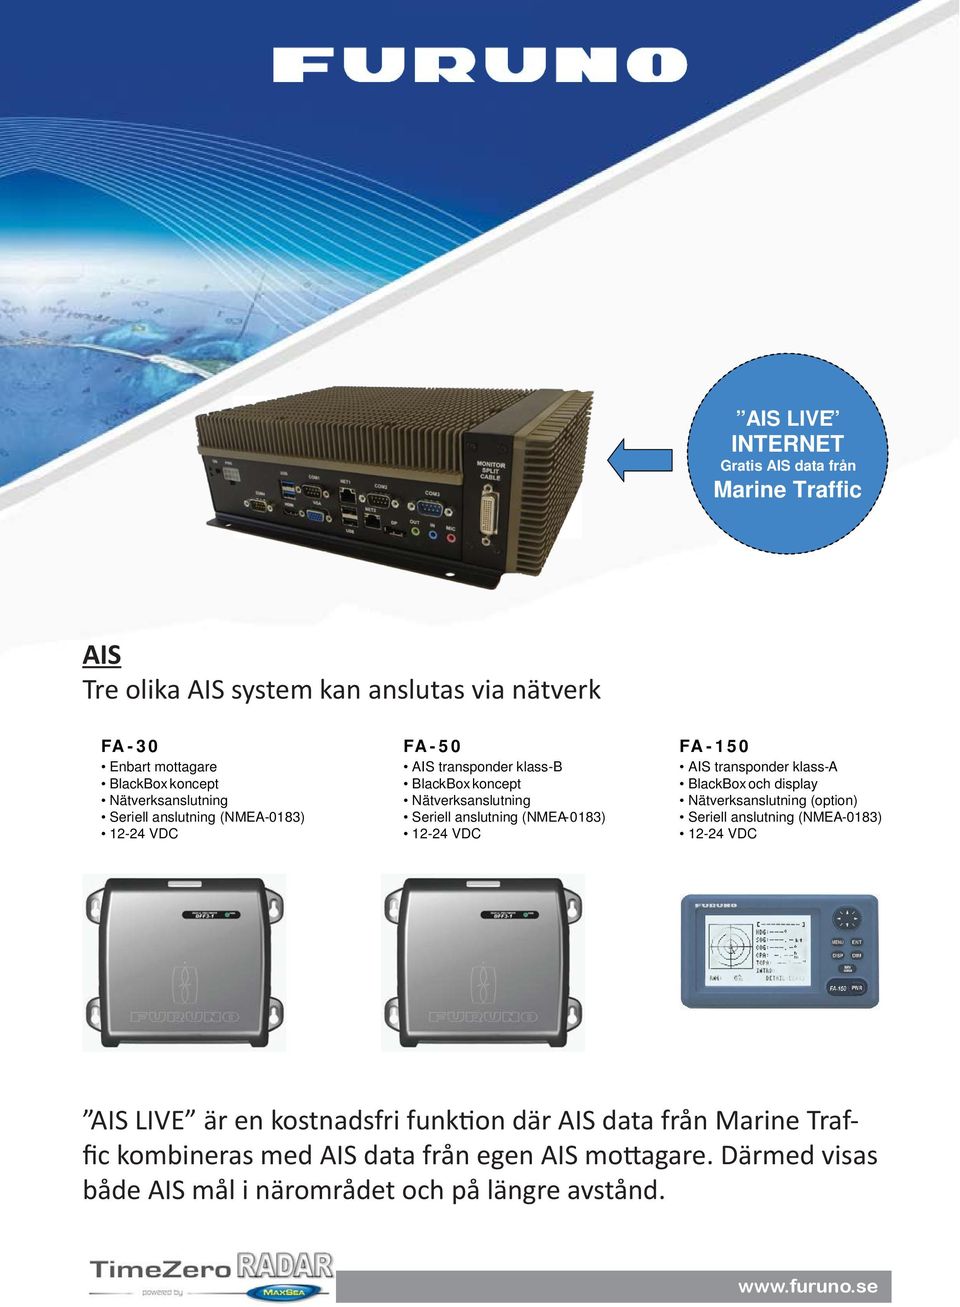 0183) 12-24 VDC FA - 150 AIS transponder klass - A BlackBox och display Nätverksanslutning (option) Seriell anslutning (NMEA - 0183) 12-24 VDC AIS LIVE är